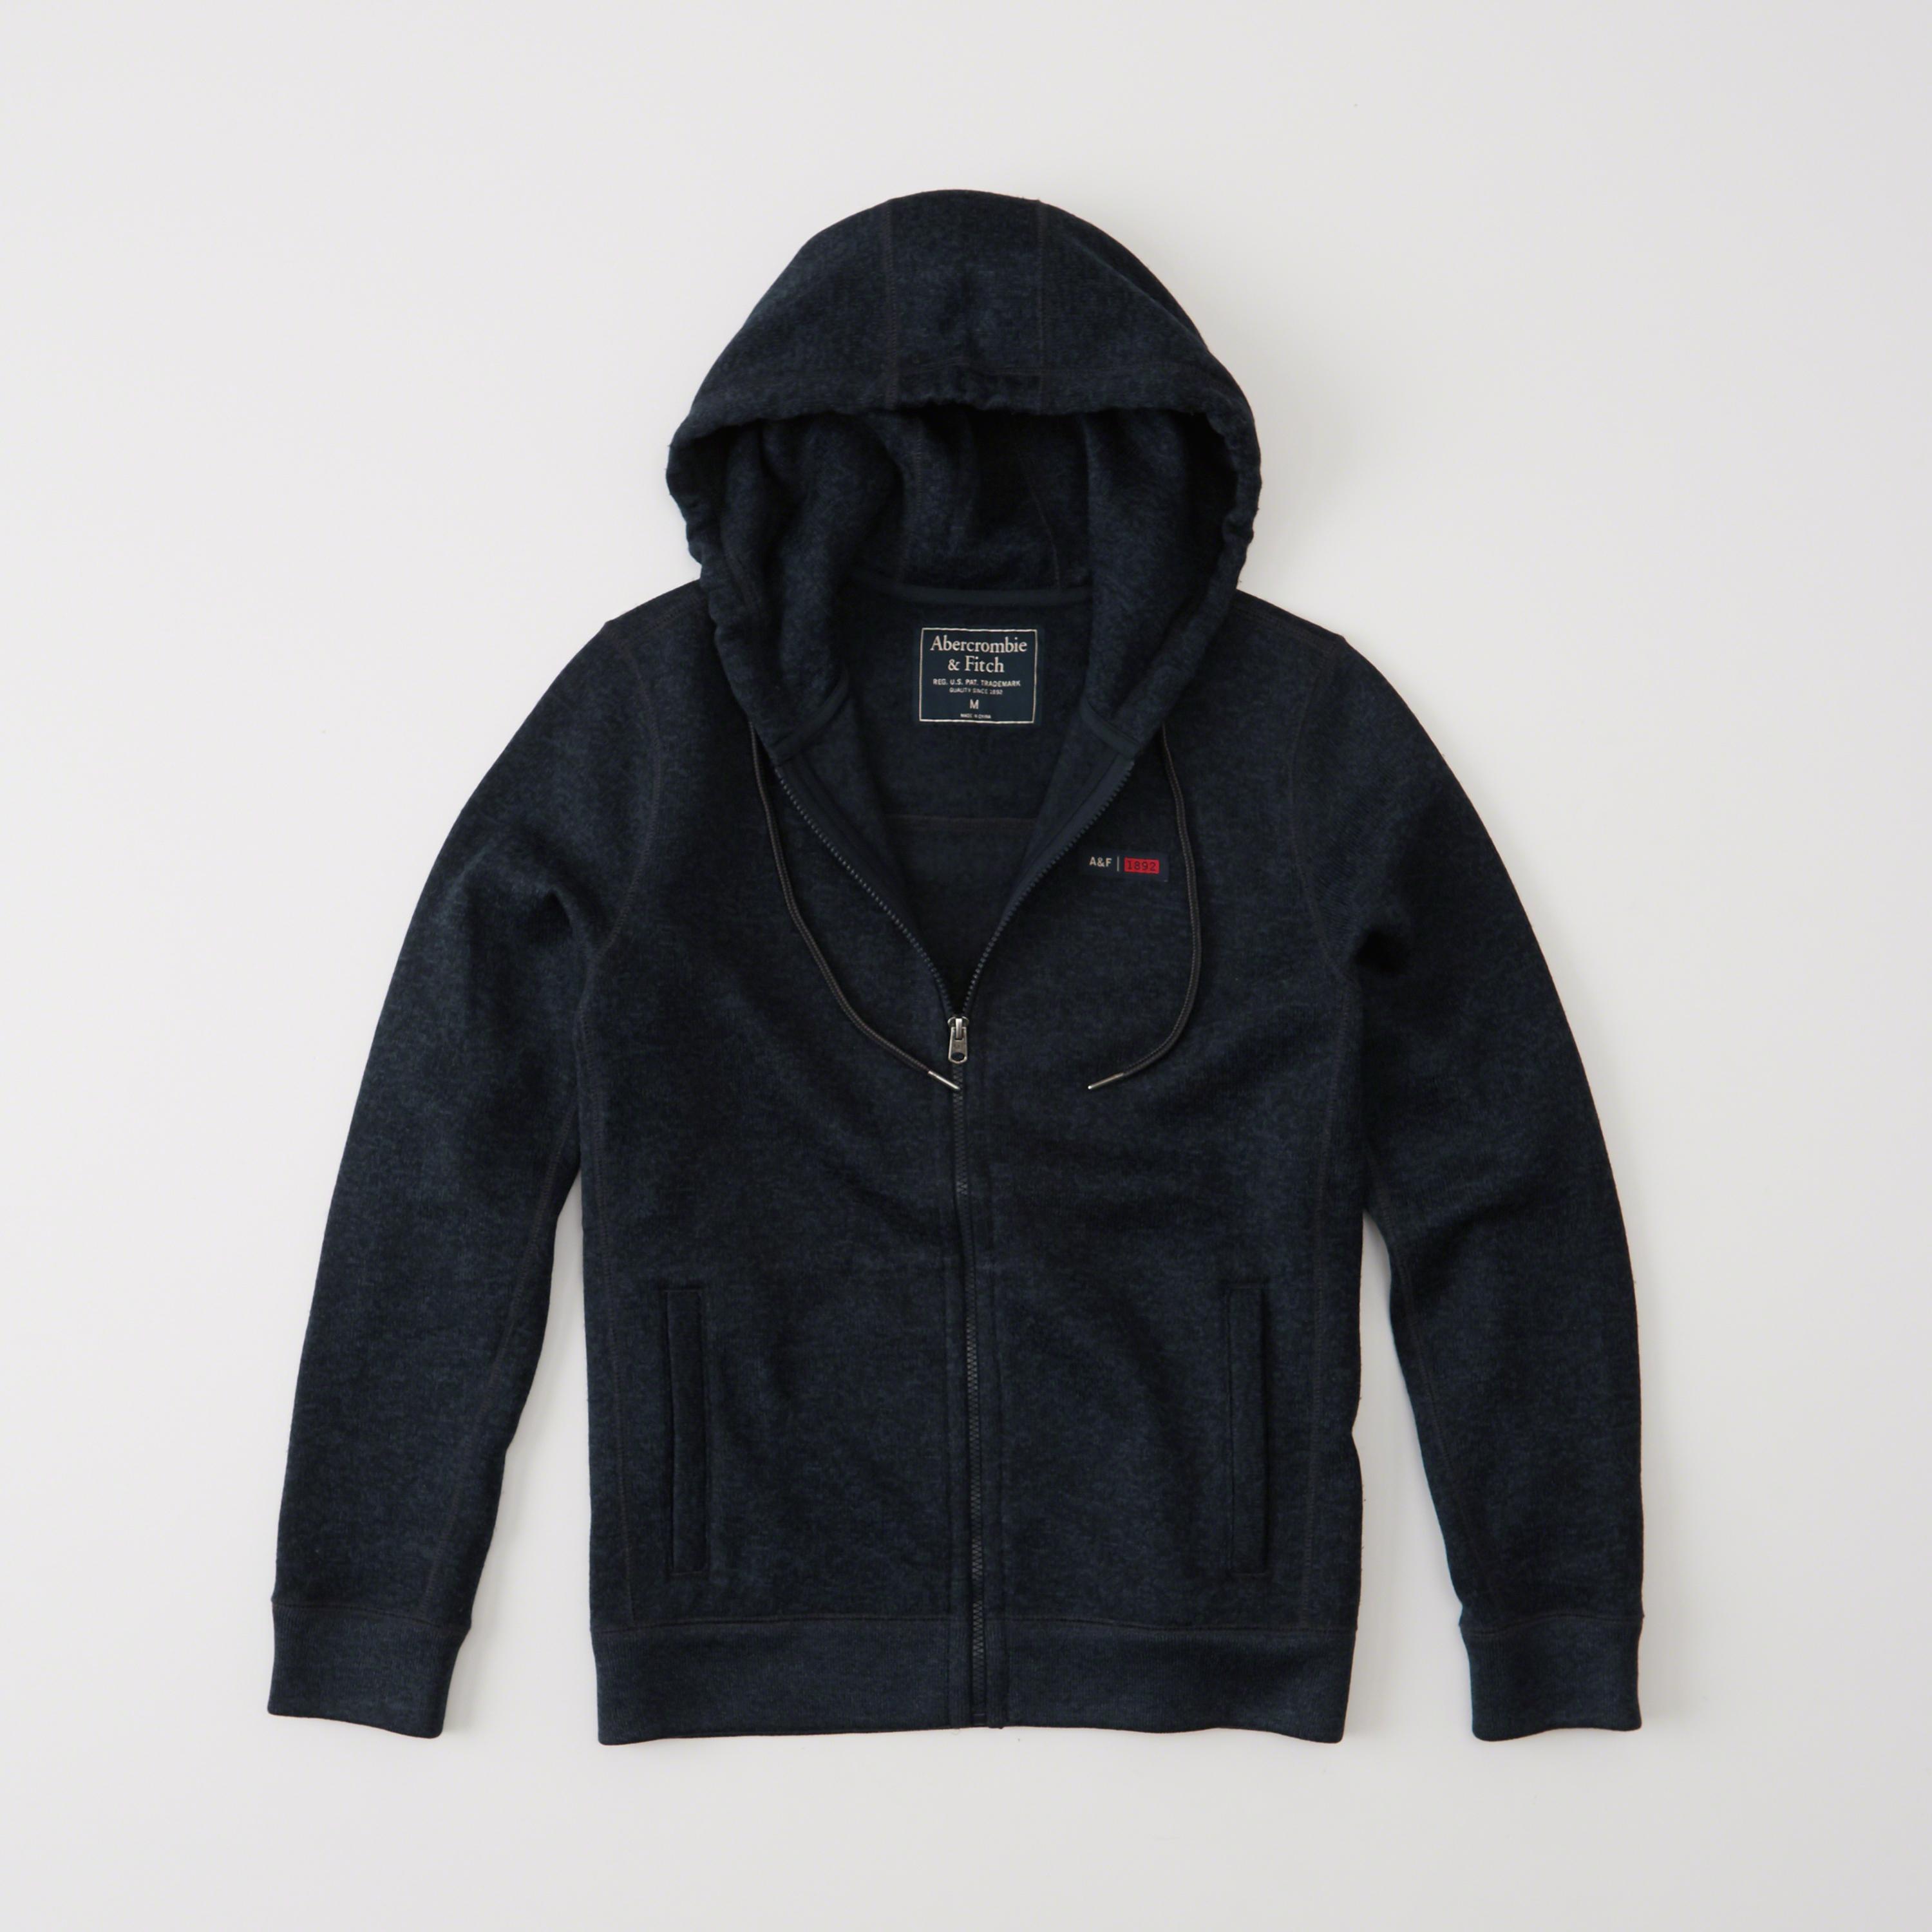 Lyst - Abercrombie & fitch Sweater Fleece Full-zip Hoodie in Blue for Men